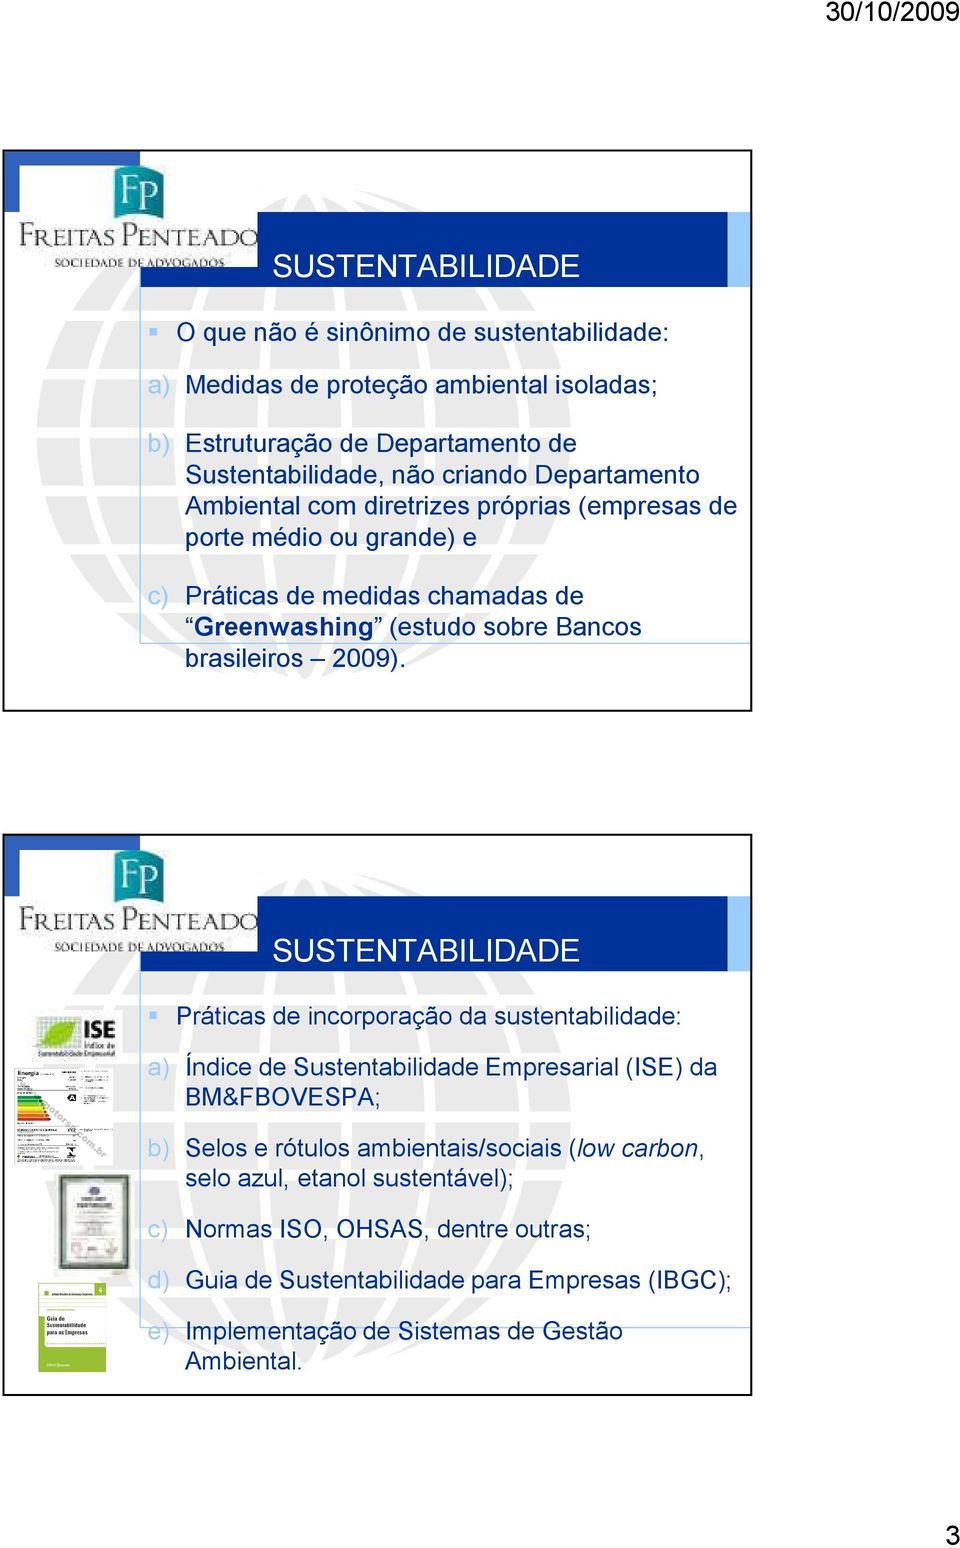 SUSTENTABILIDADE Práticas de incorporação da sustentabilidade: a) Índice de Sustentabilidade Empresarial (ISE) da BM&FBOVESPA; b) Selos e rótulos ambientais/sociais (low